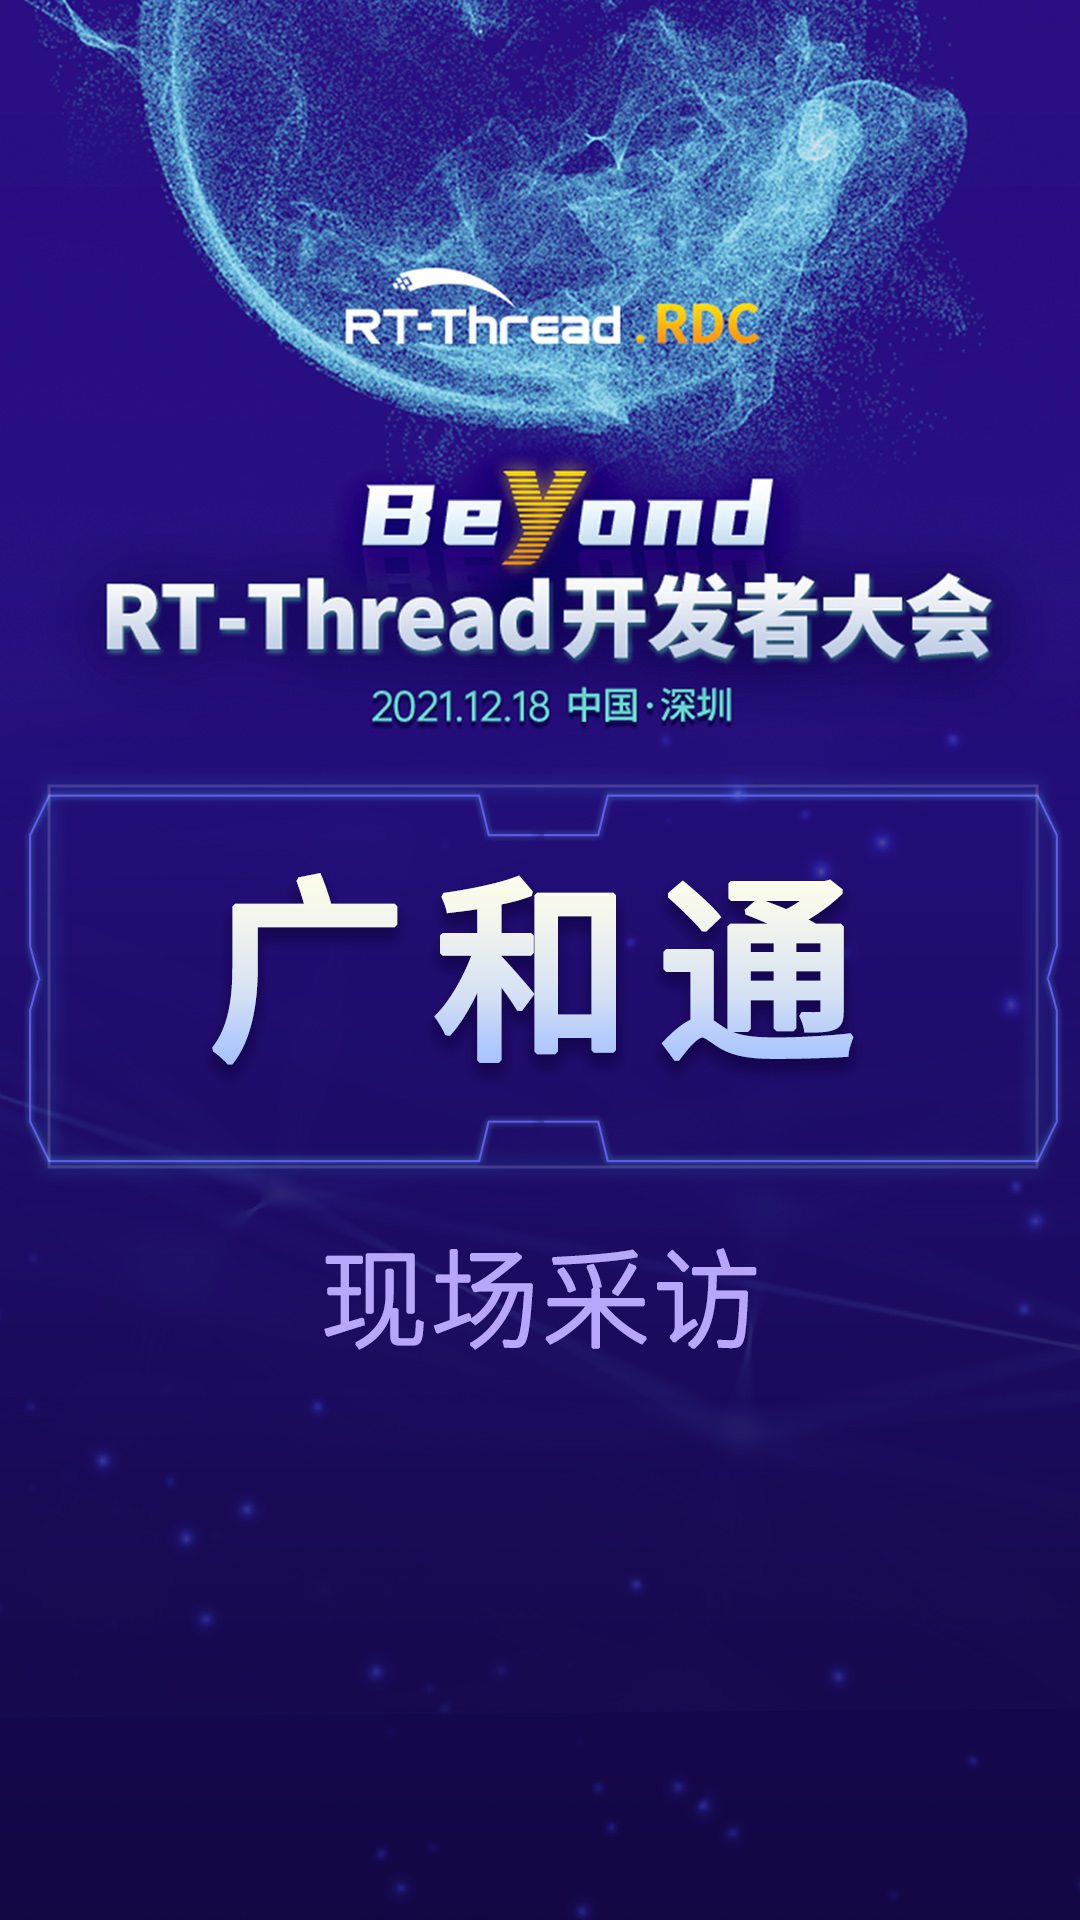 RT-Thread开发者大会-广和通企业现场采访#嵌入式开发 